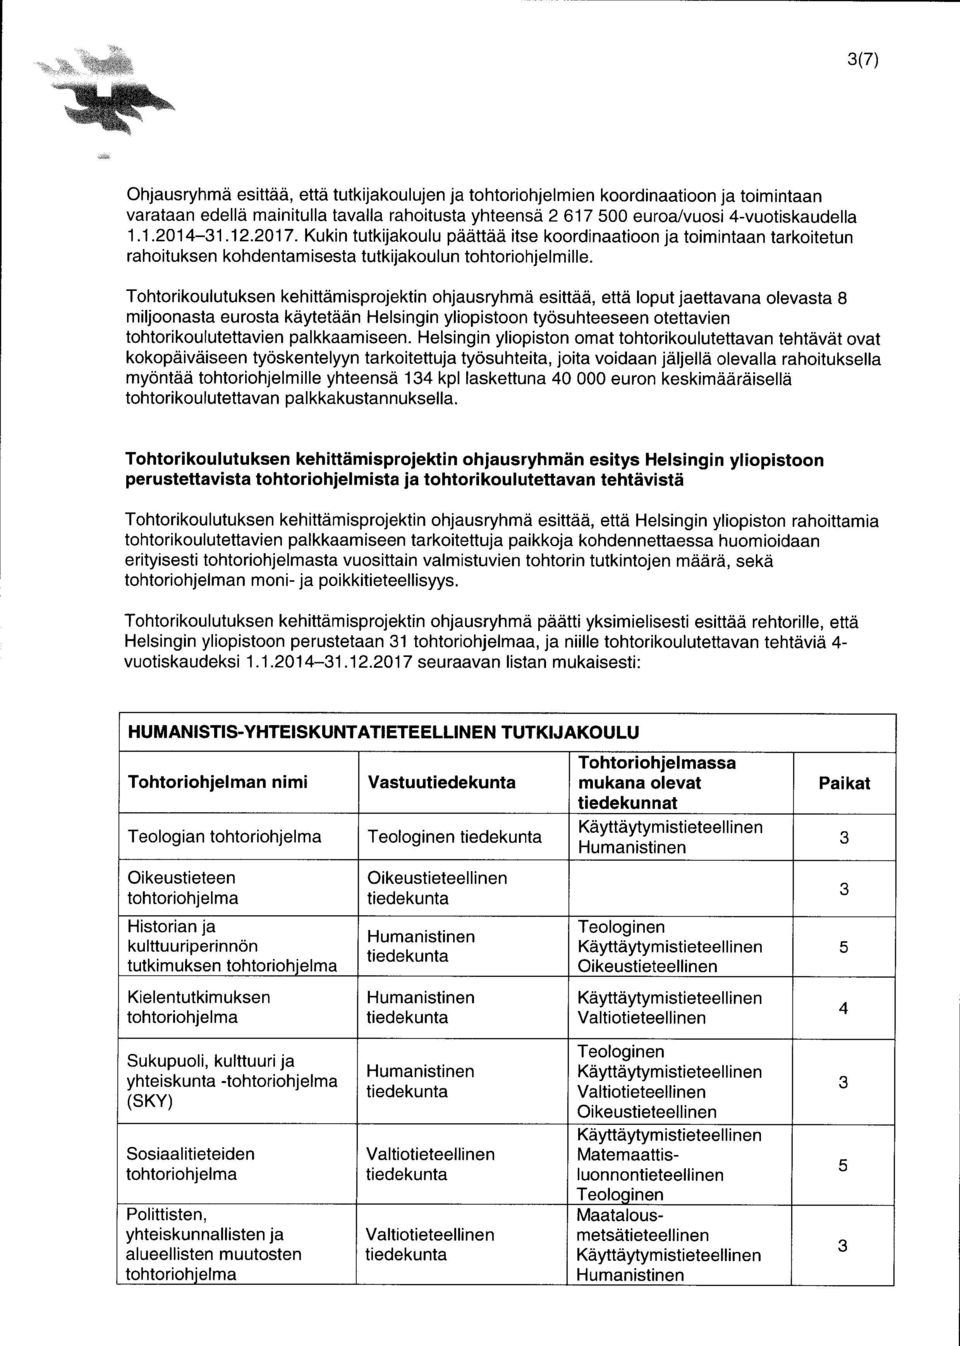 Tohtorikoulutuksen kehittämisprojektin ohjausryhmä esittää, että loput jaettavana olevasta 8 miljoonasta eurosta käytetään Helsingin yliopistoon työsuhteeseen otettavien tohtorikoulutettavien